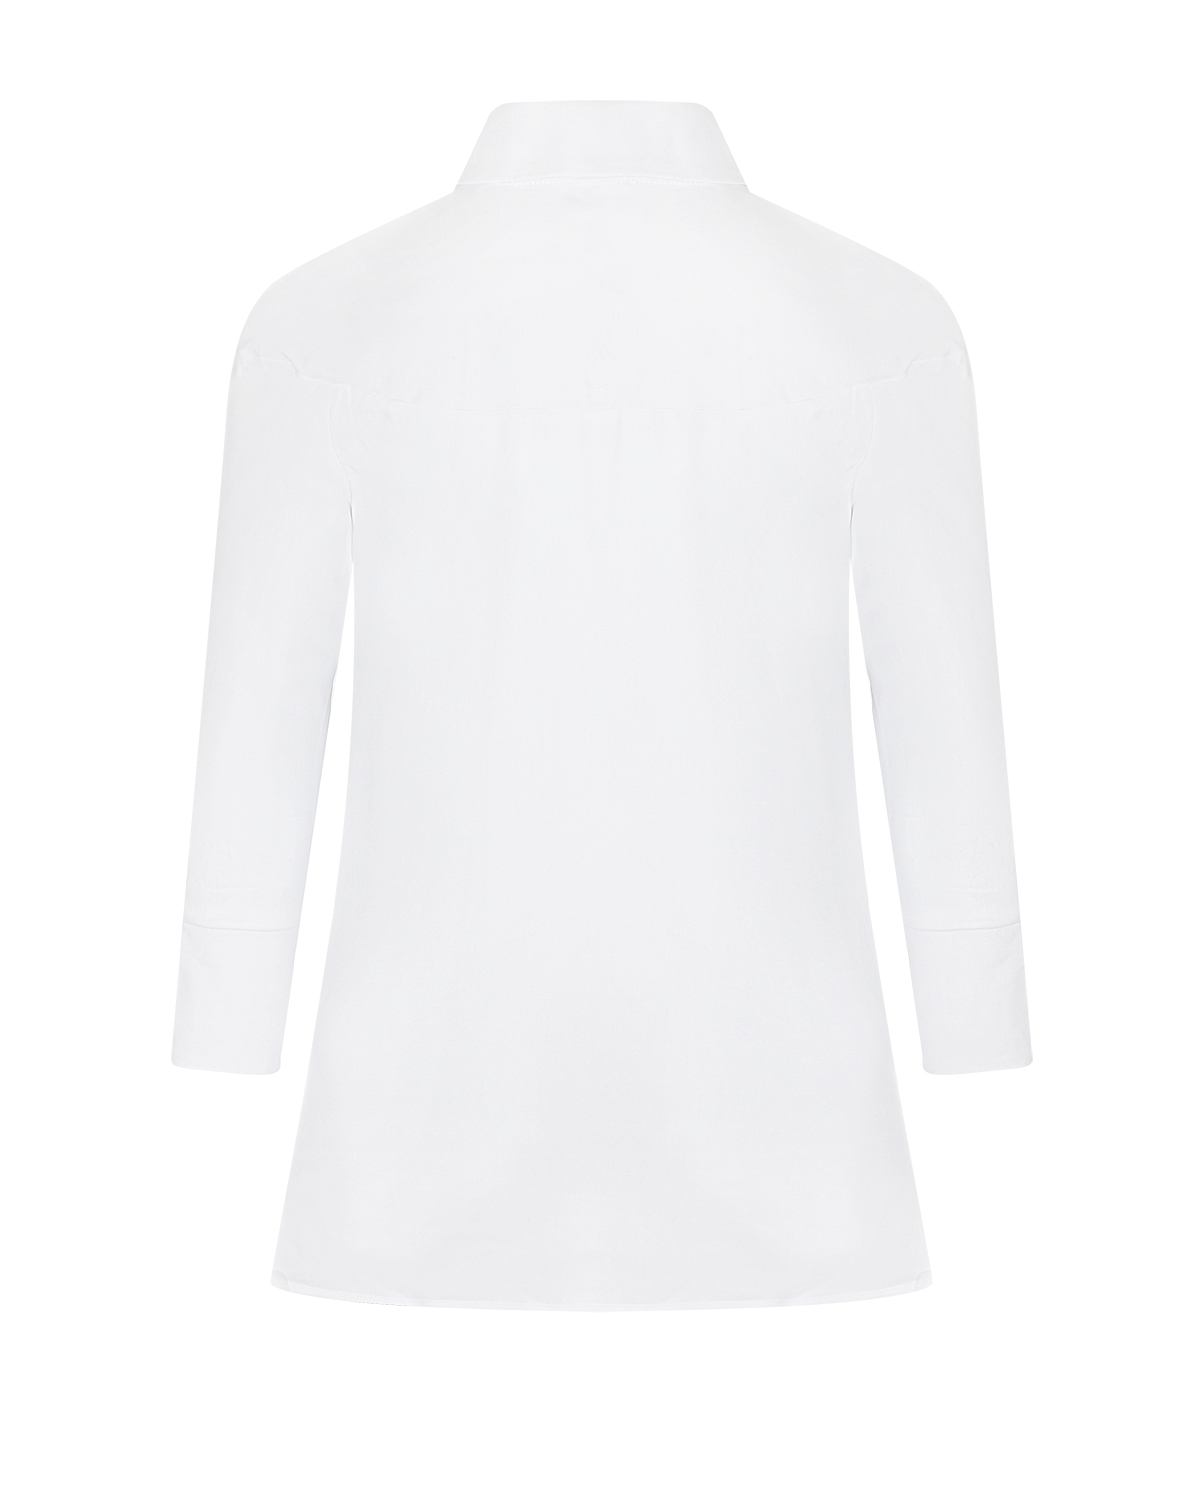 Белая блуза с рукавами 3/4 Attesa, размер 38, цвет белый Белая блуза с рукавами 3/4 Attesa - фото 5